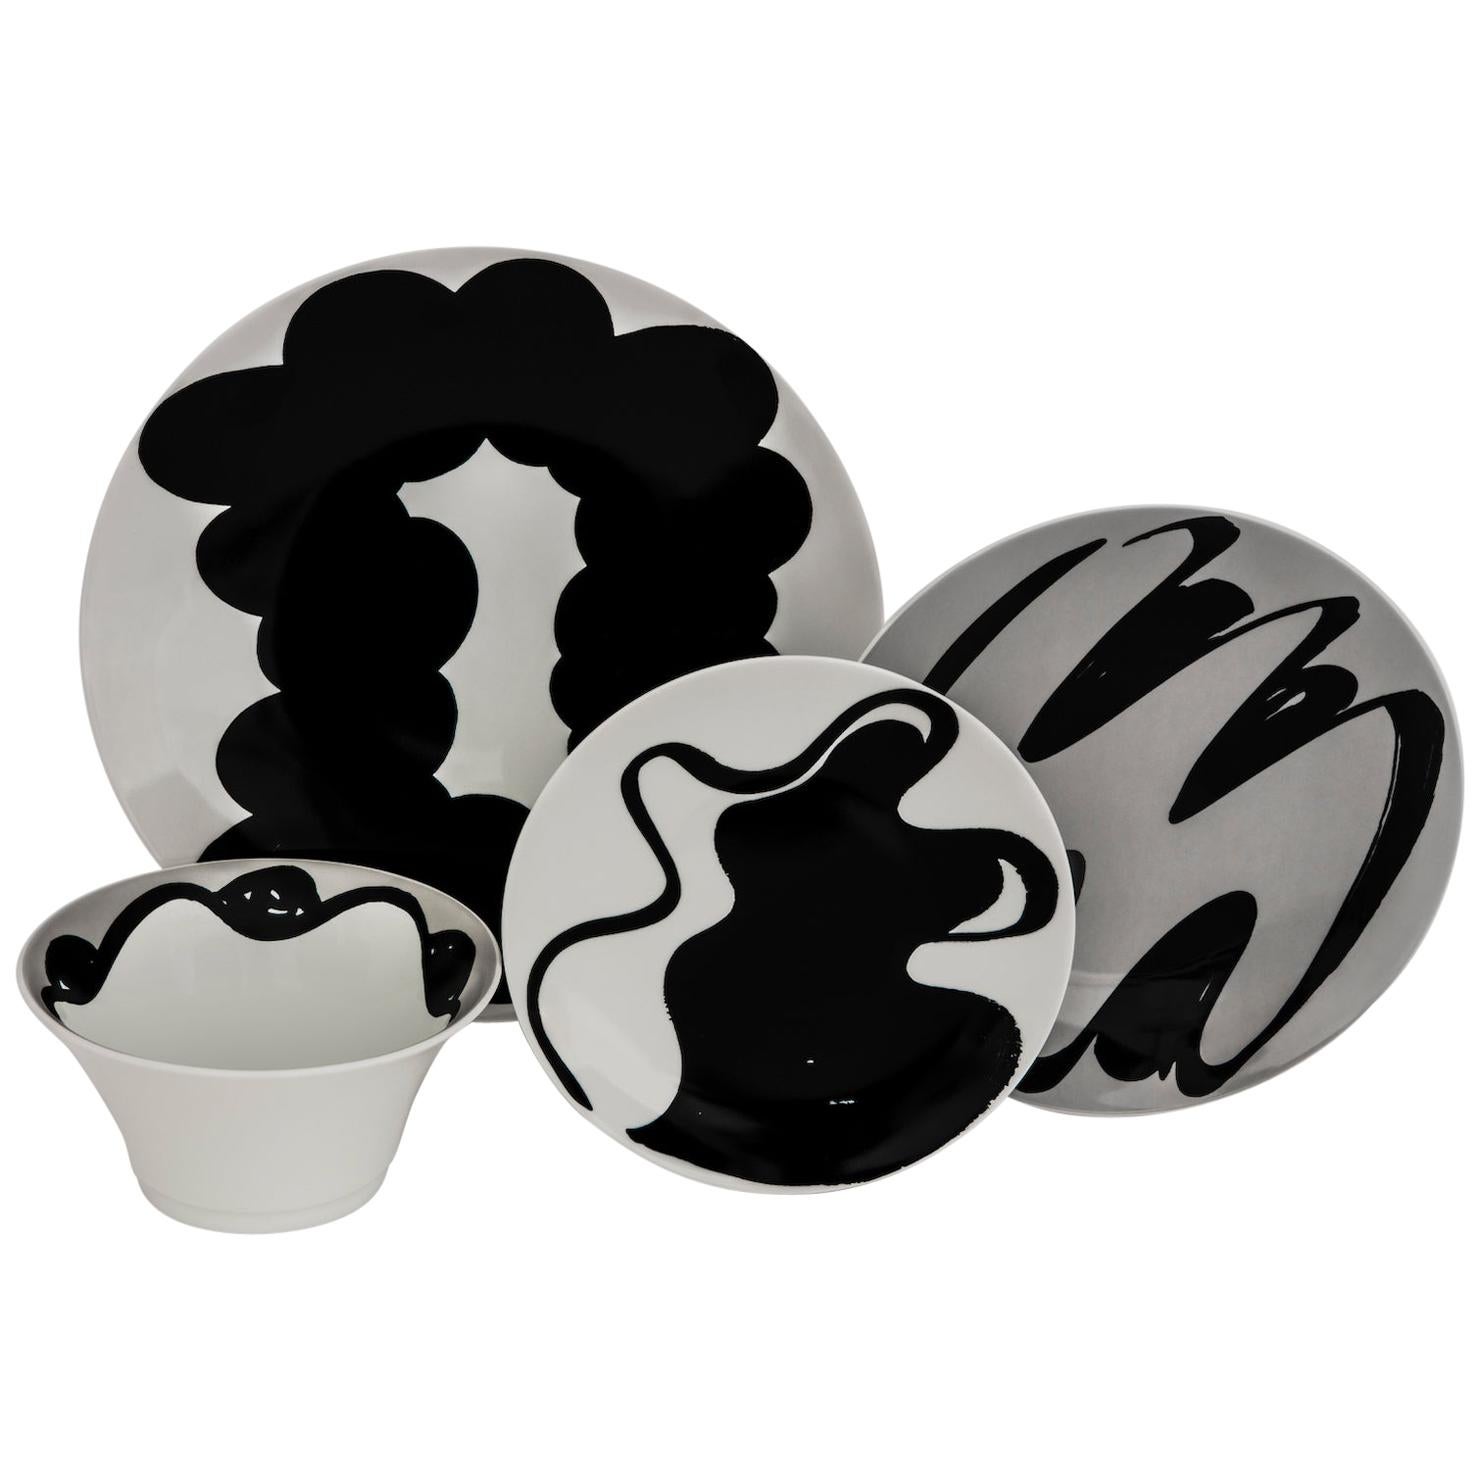 Schwarz-graues französisches Limoges-Porzellan-Essteller, Teller und Schale aus 4-teiligem Porzellan